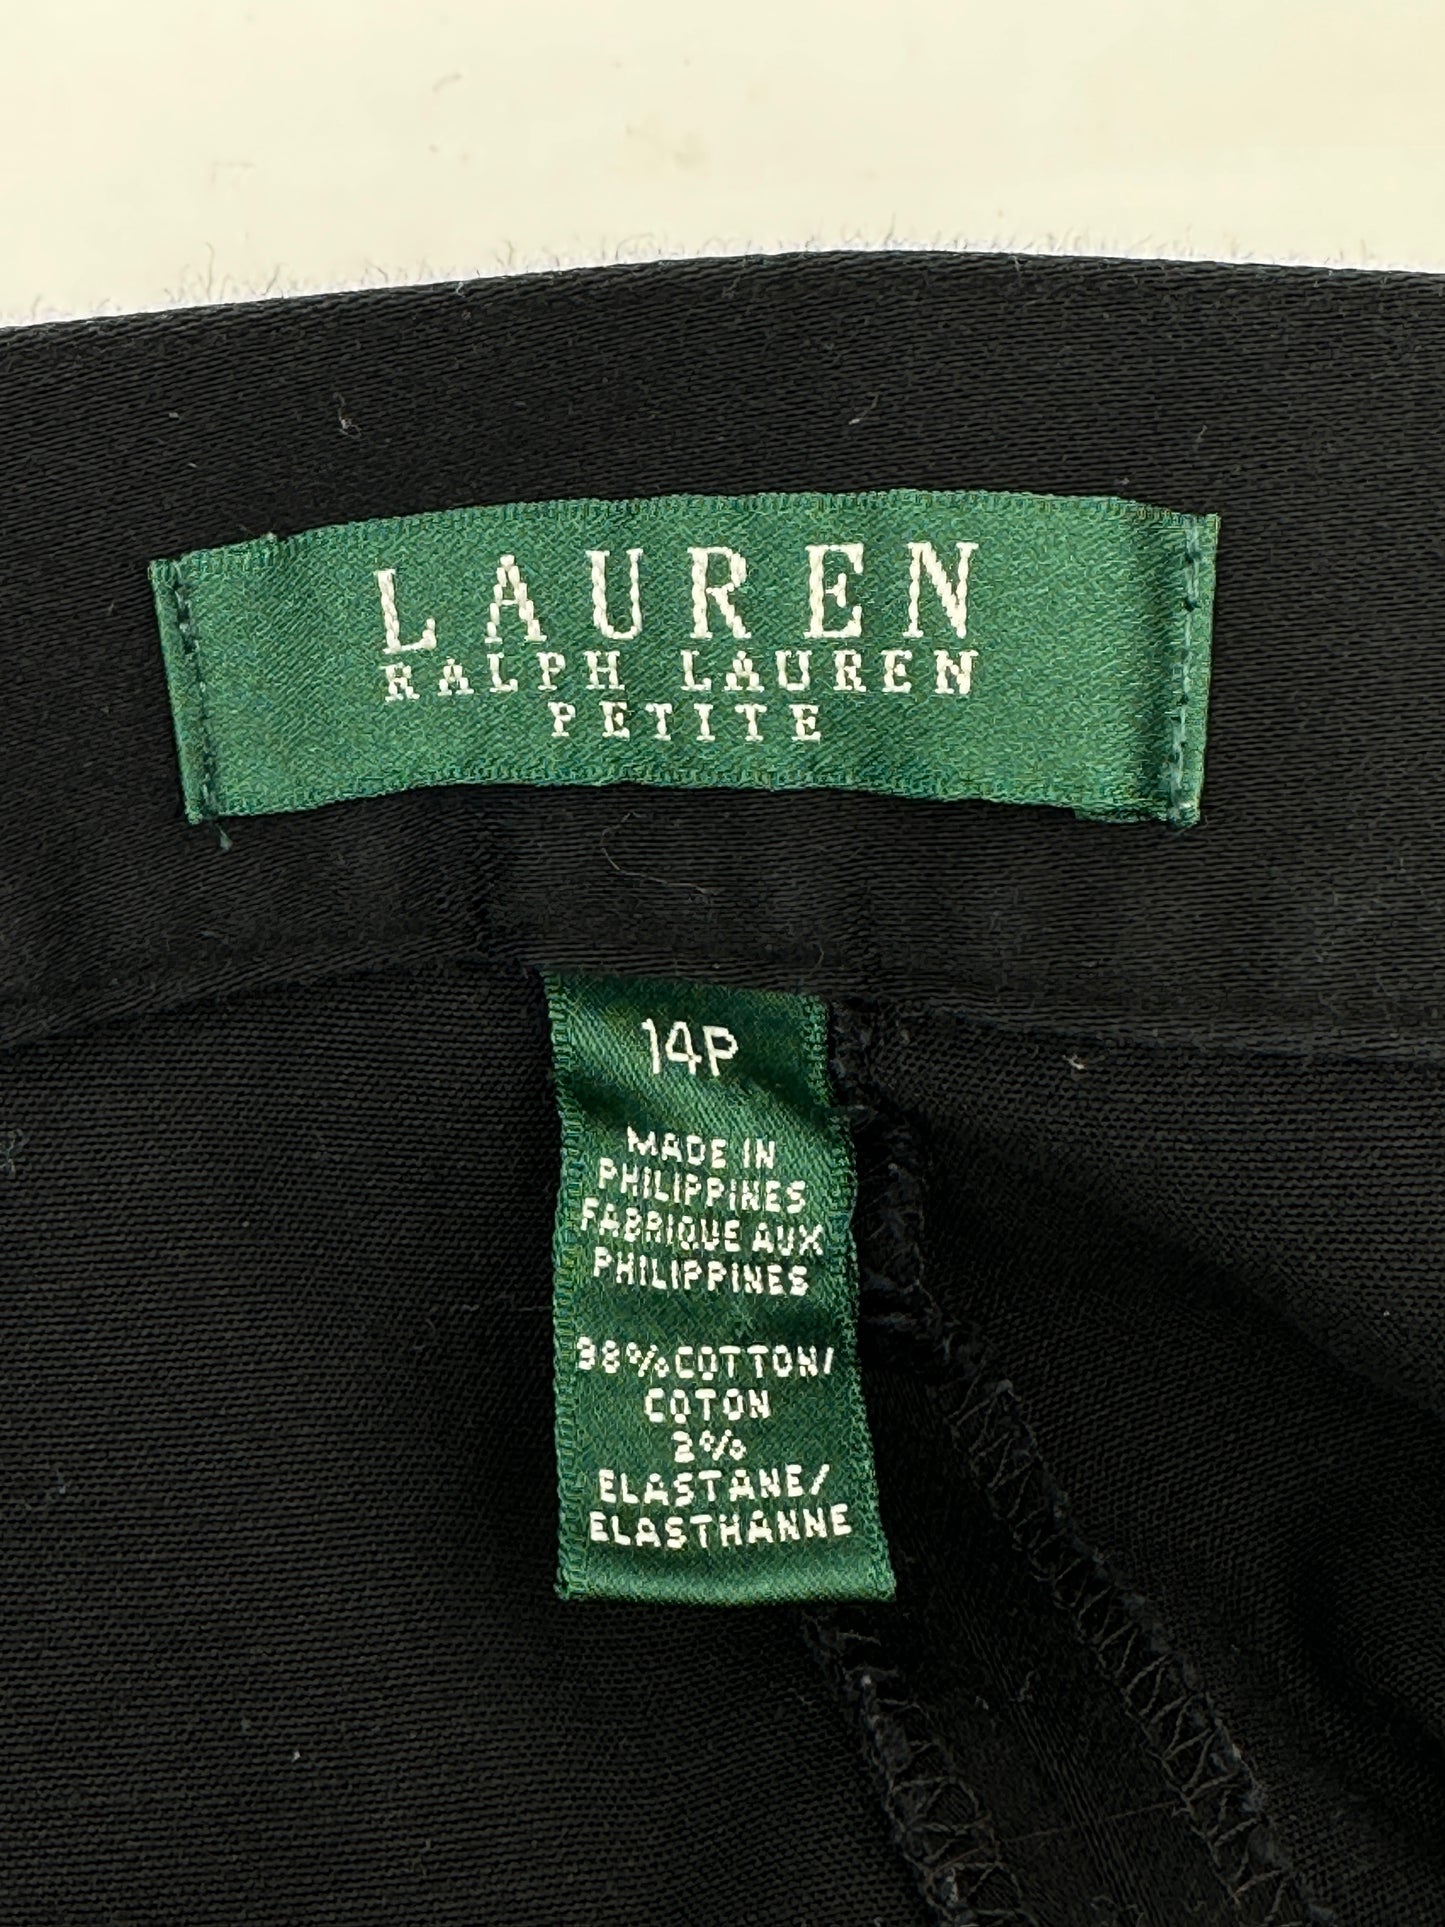 Lauren Ralph Lauren Size 14P Black Capris Capri Pants